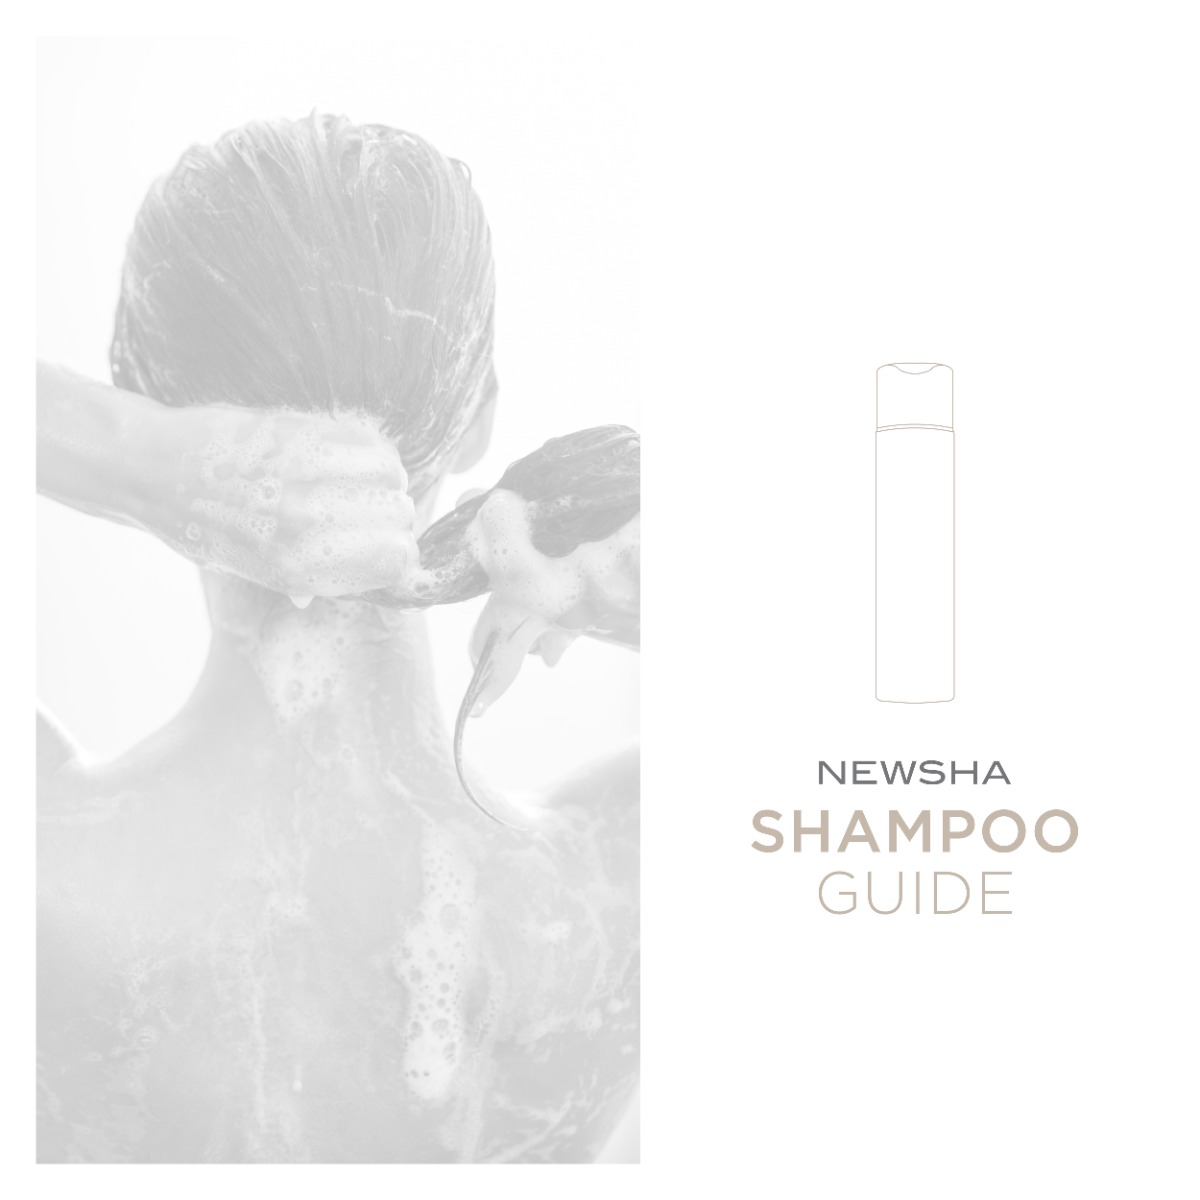 NEWSHA Shampoo Guide